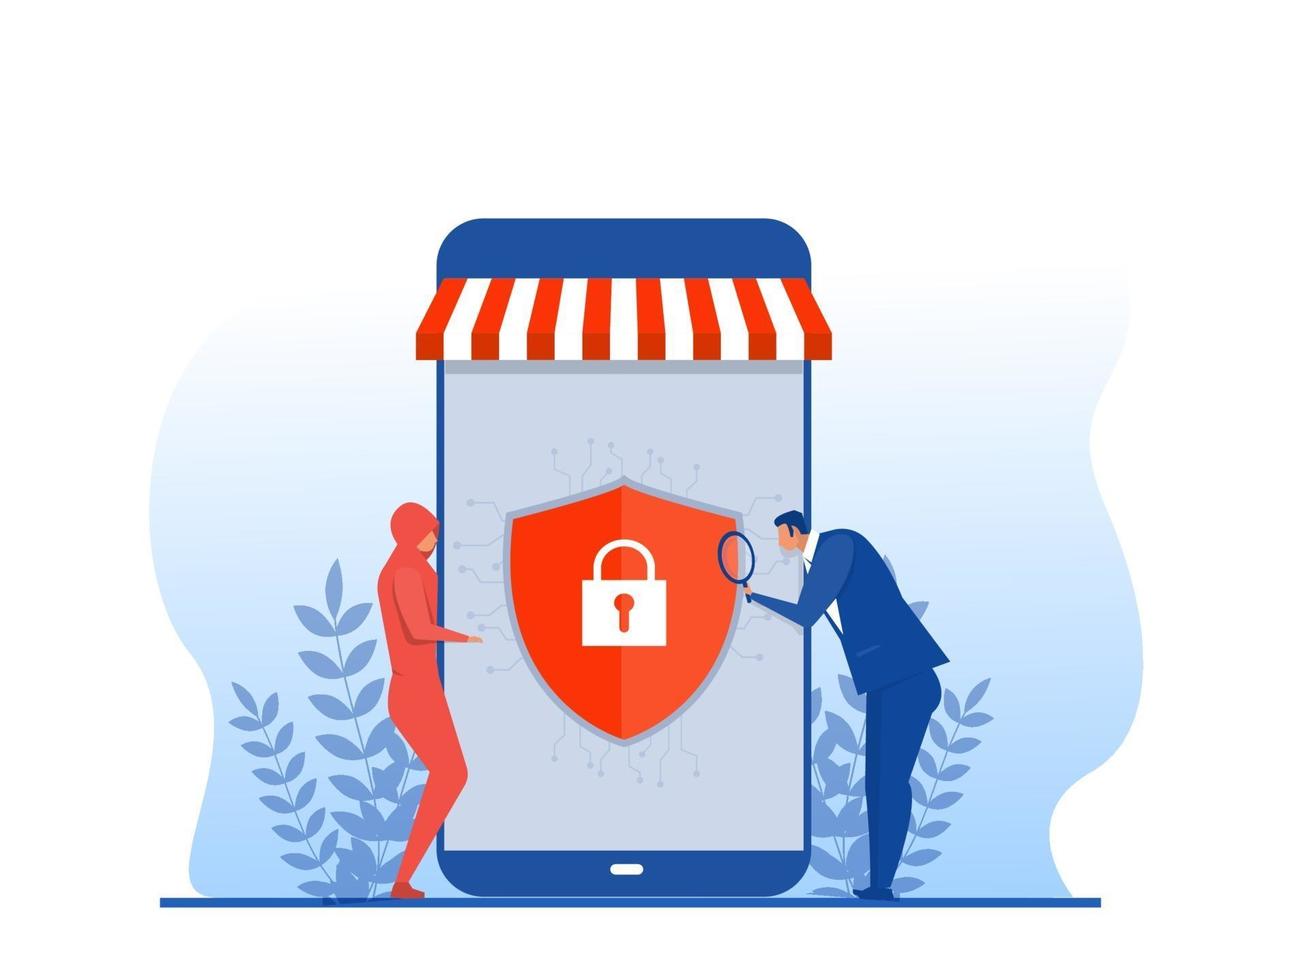 shoppa nätbutiks banksäkerhet, säker onlineshopping, vektor